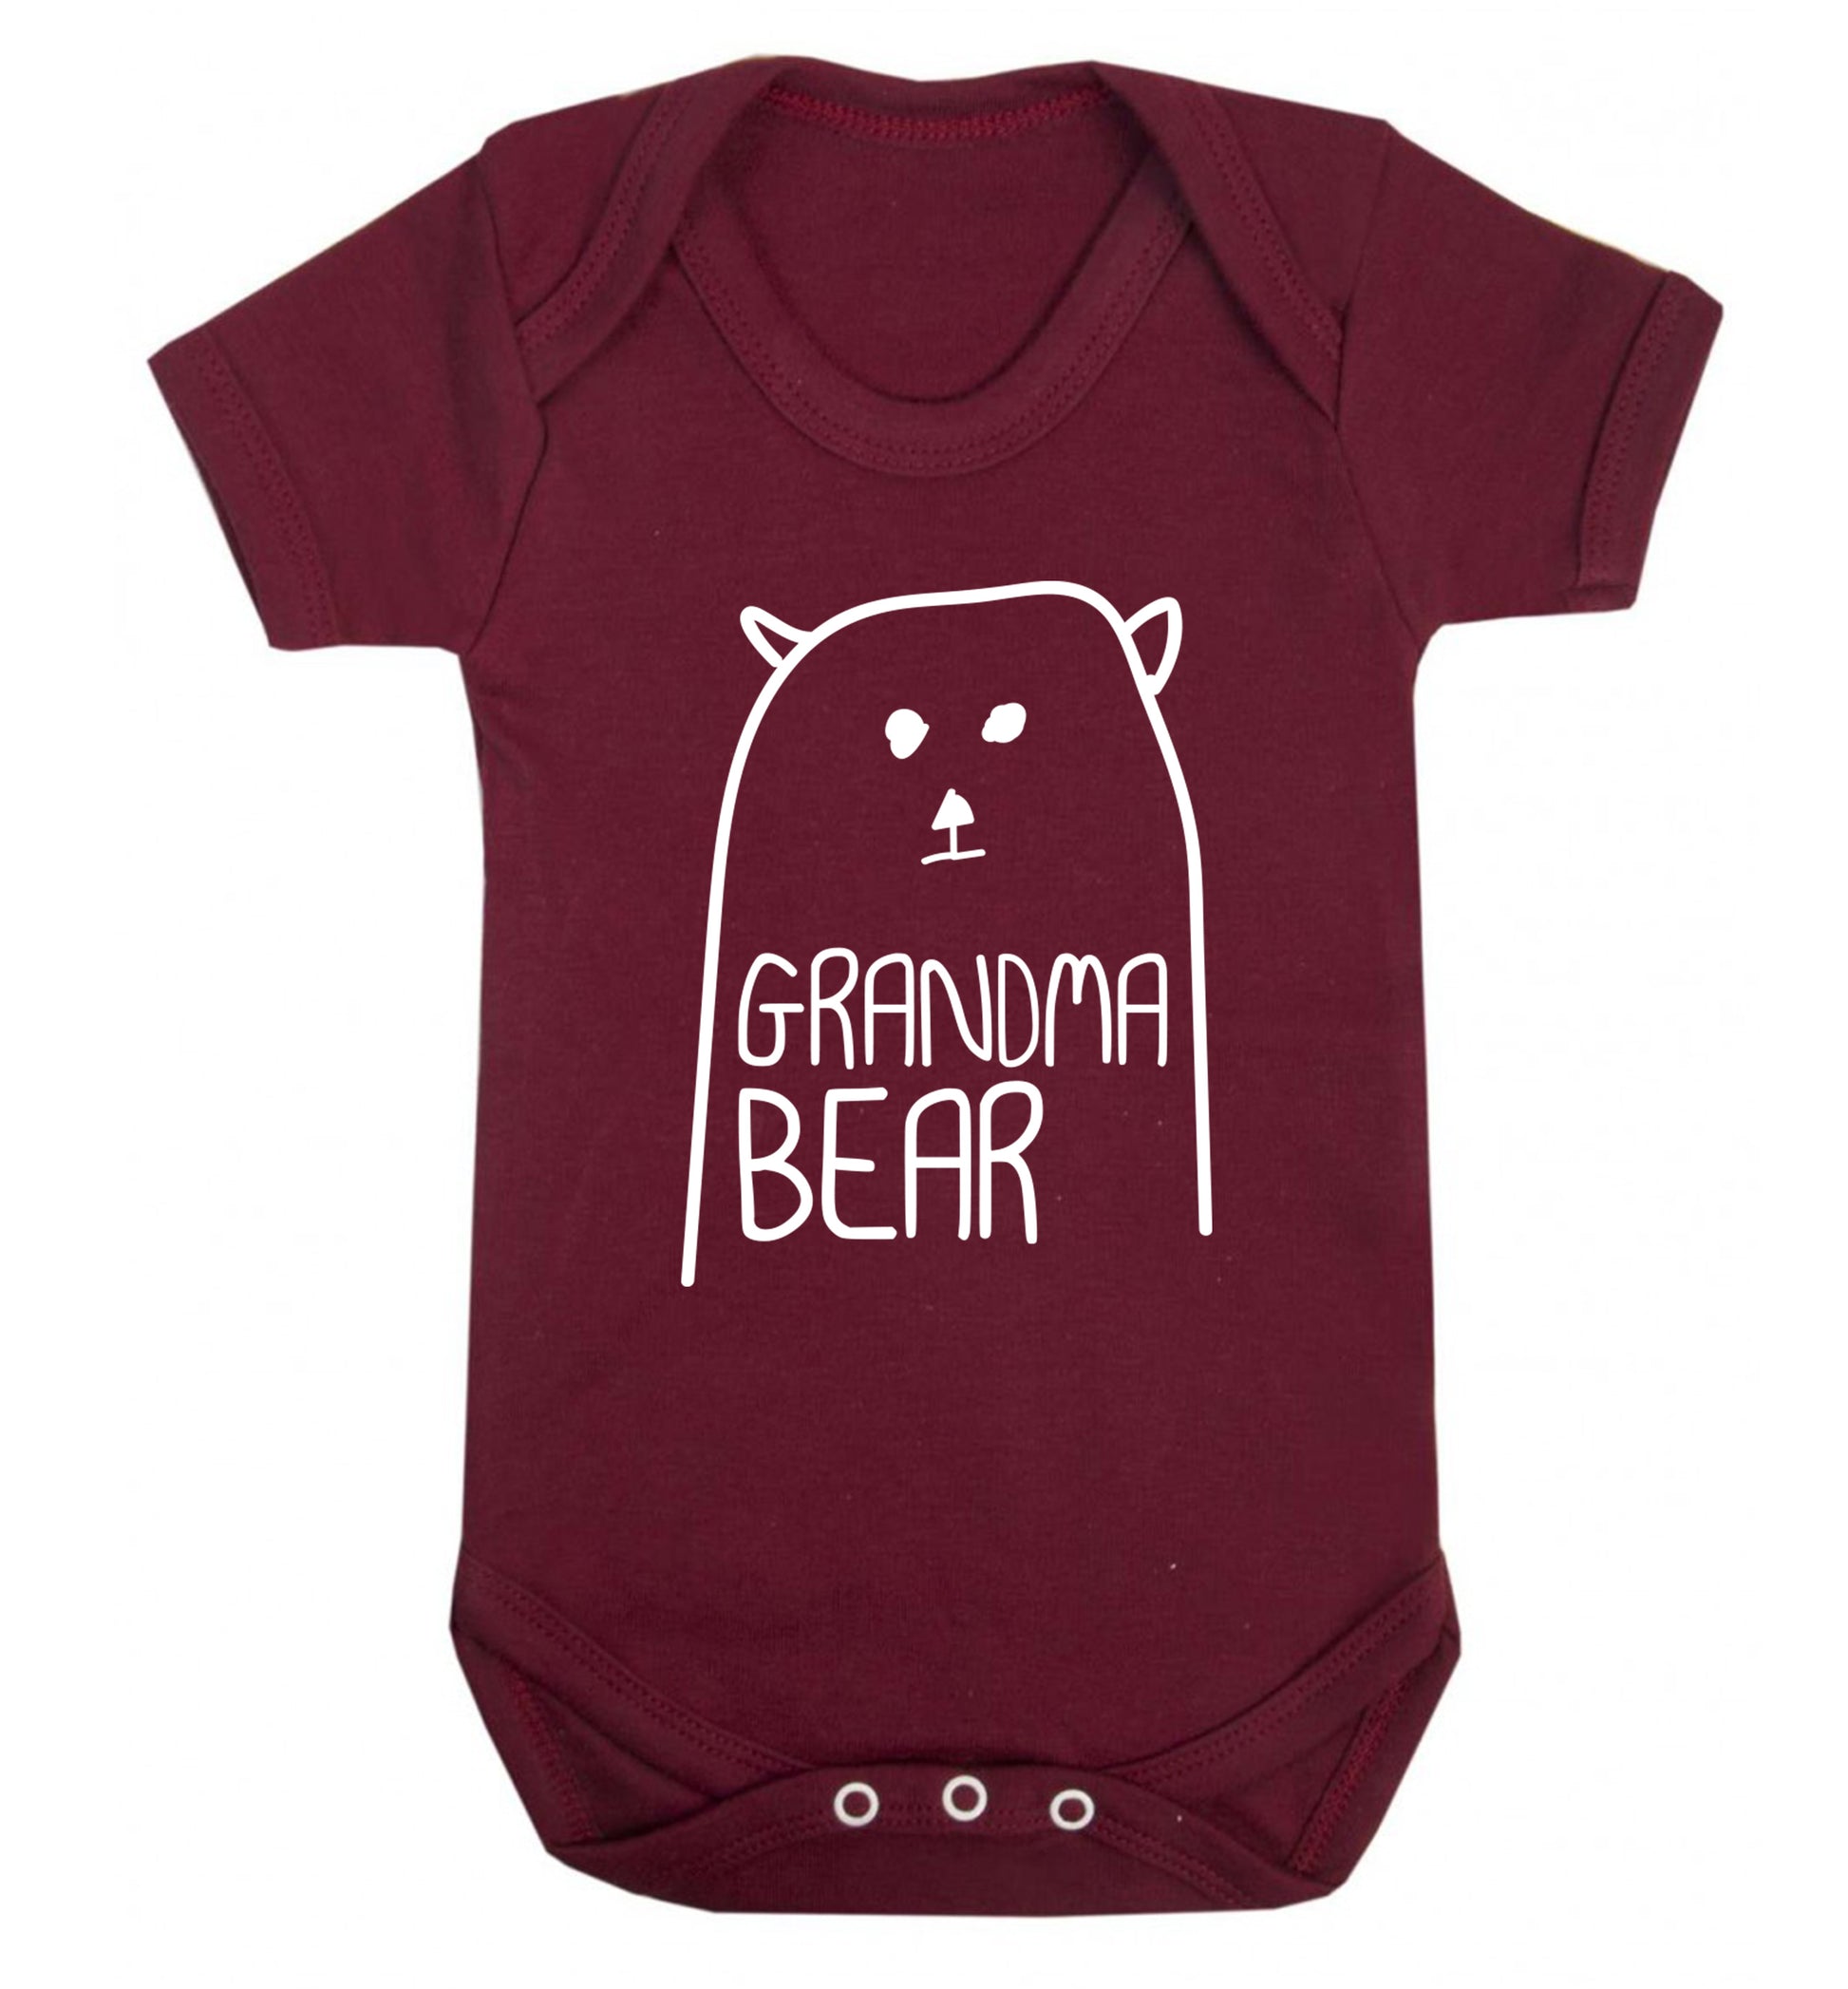 Grandma bear Baby Vest maroon 18-24 months